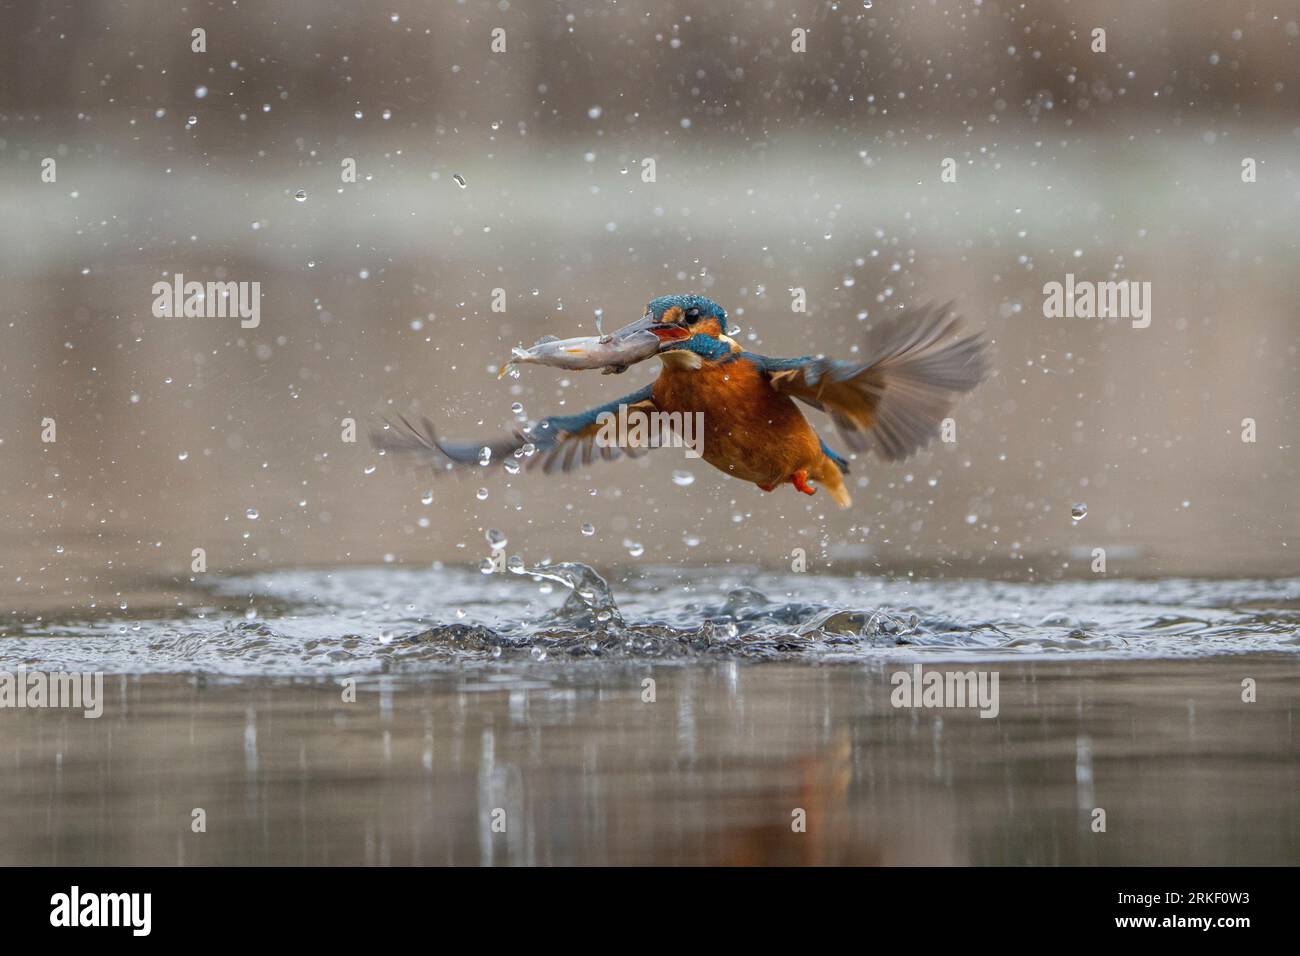 Spalmare le ali e portare il cibo a casa. Bourne, Inghilterra: SPLENDIDE immagini di un pescatore di kingfisher che fa delle graziose immersioni e balla sotto la pioggia, catchin Foto Stock